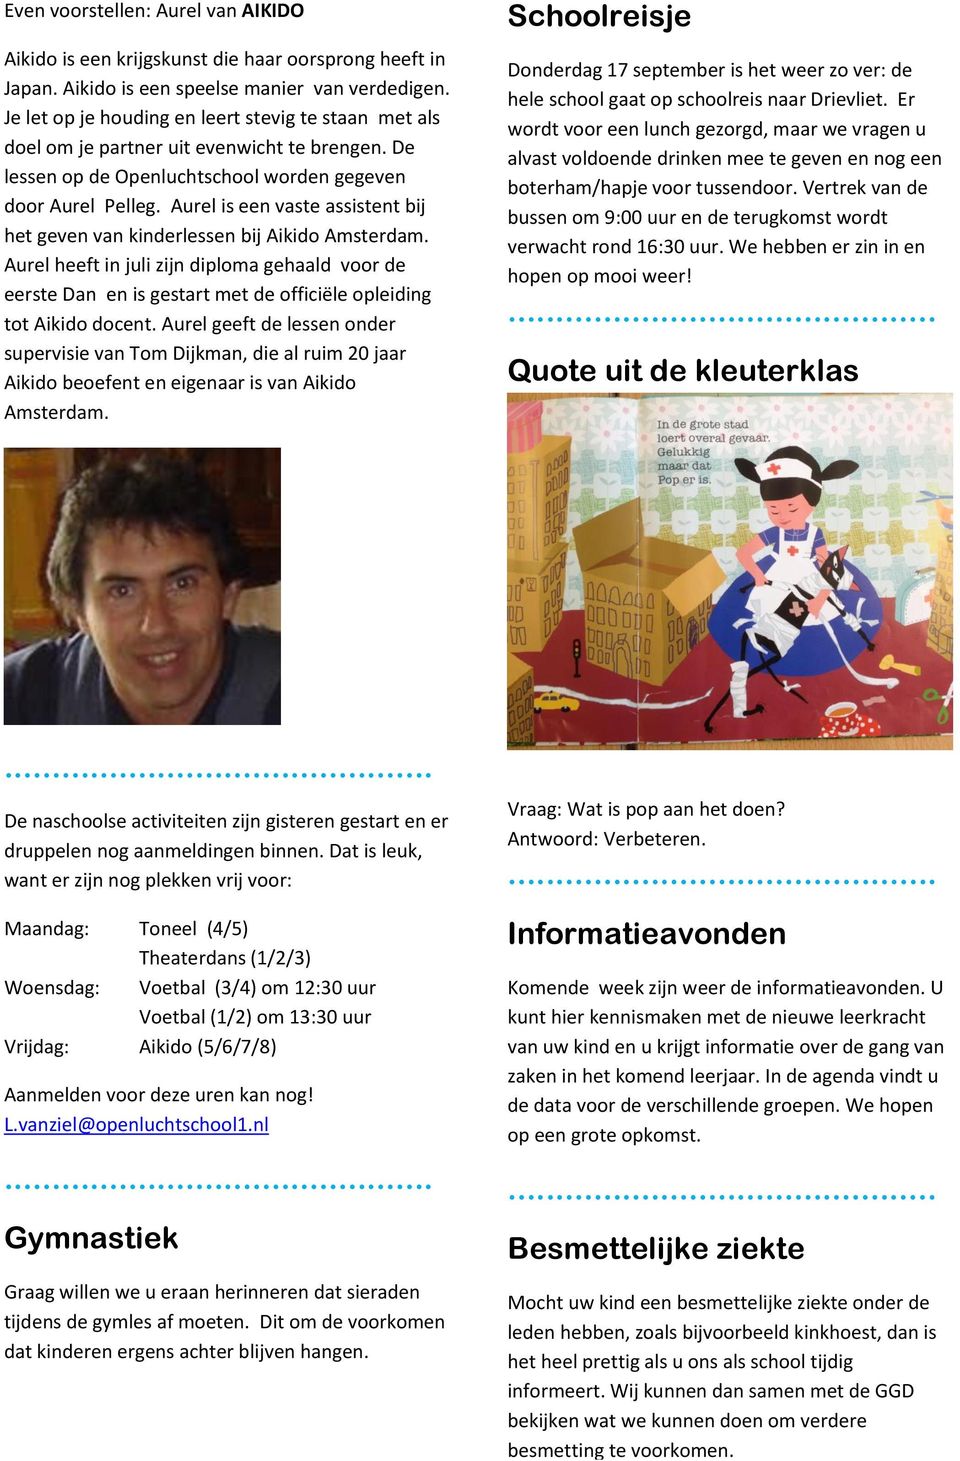 Aurel is een vaste assistent bij het geven van kinderlessen bij Aikido Amsterdam.